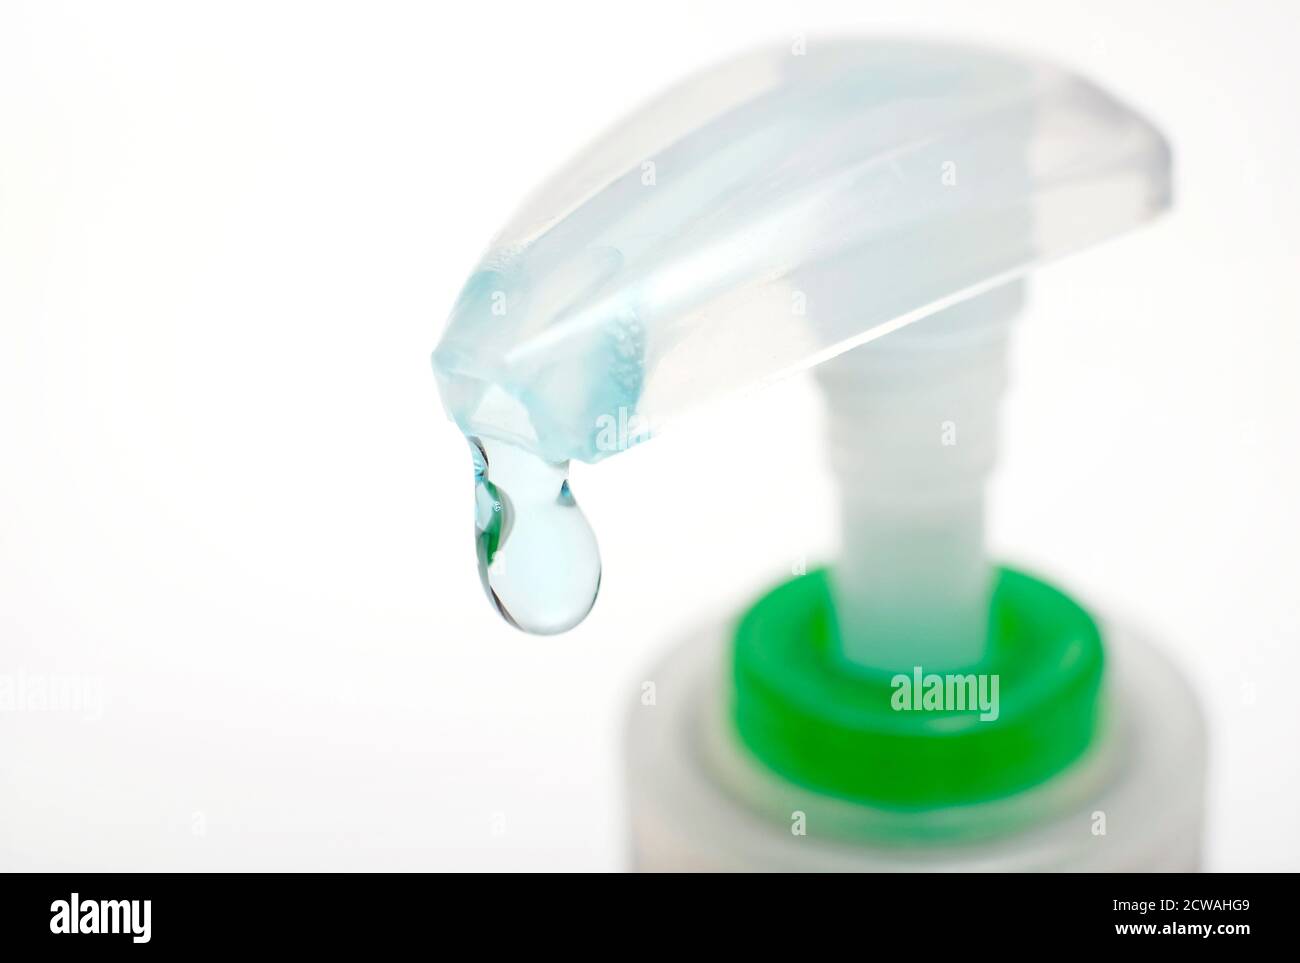 última gota de gel de manos antibacteriano en dispensador de envases de plástico Foto de stock